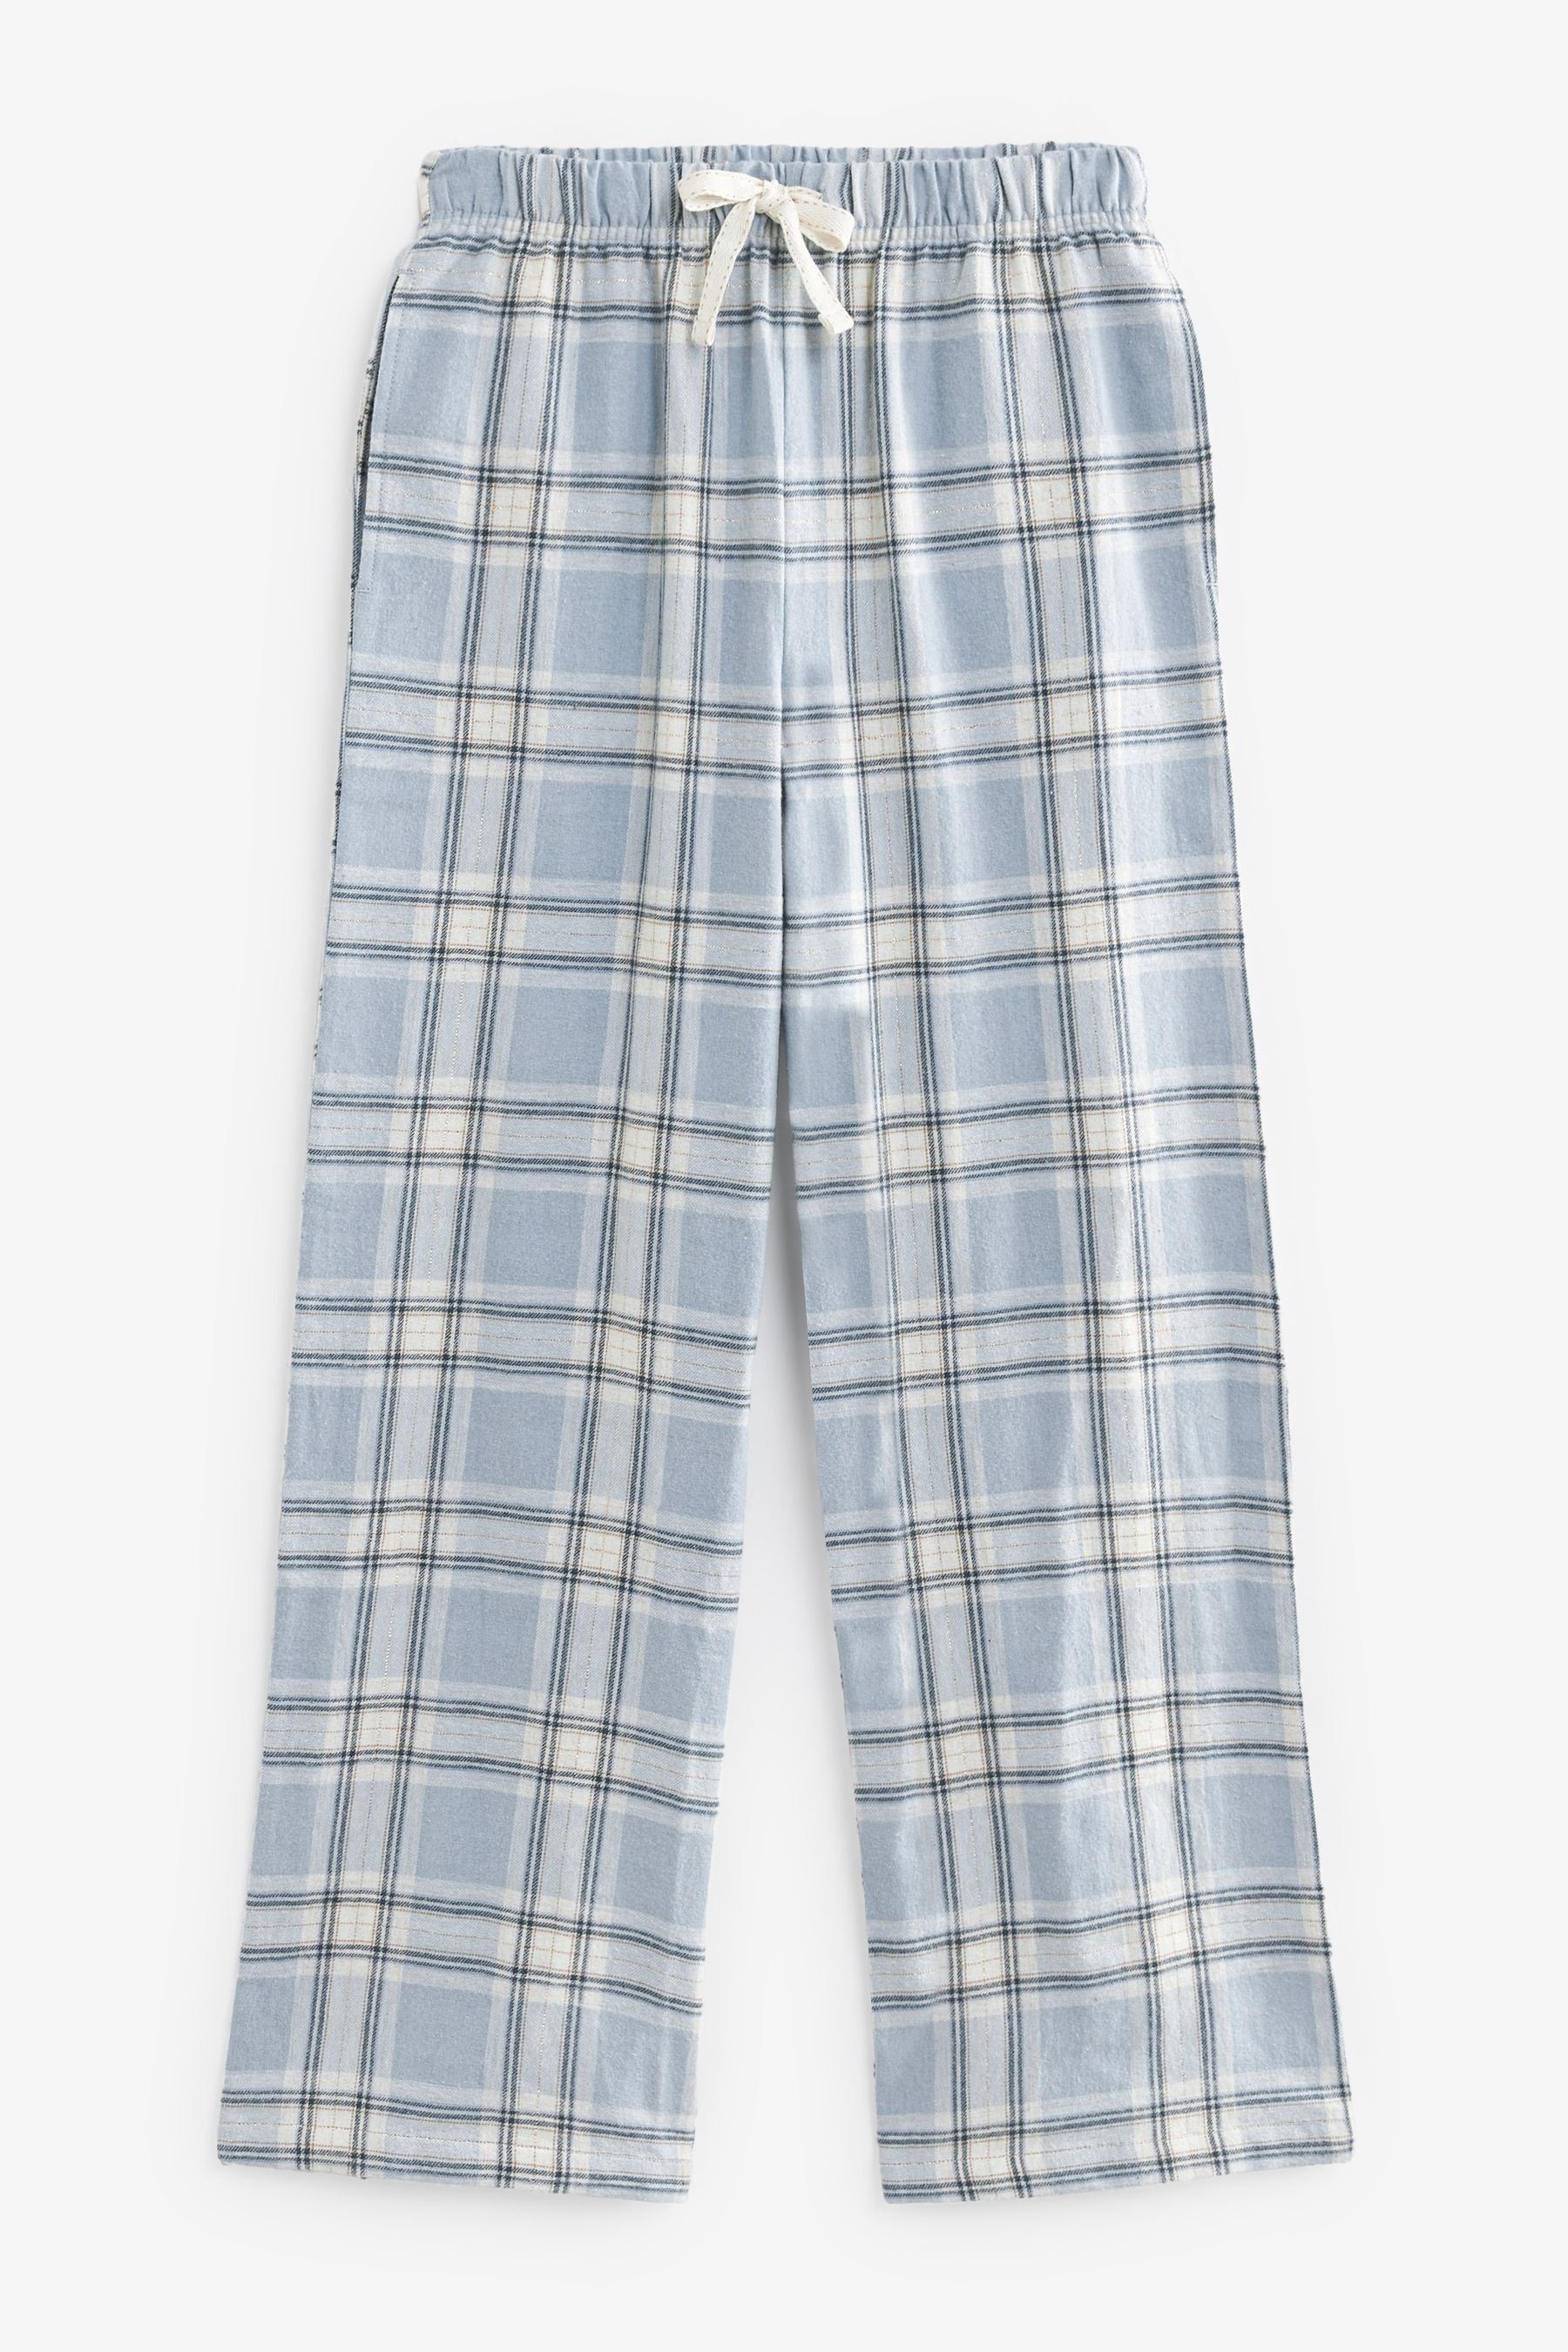 Next Pyjama Schlafanzug Blue (2 Flanellhose Top geripptem und mit tlg)